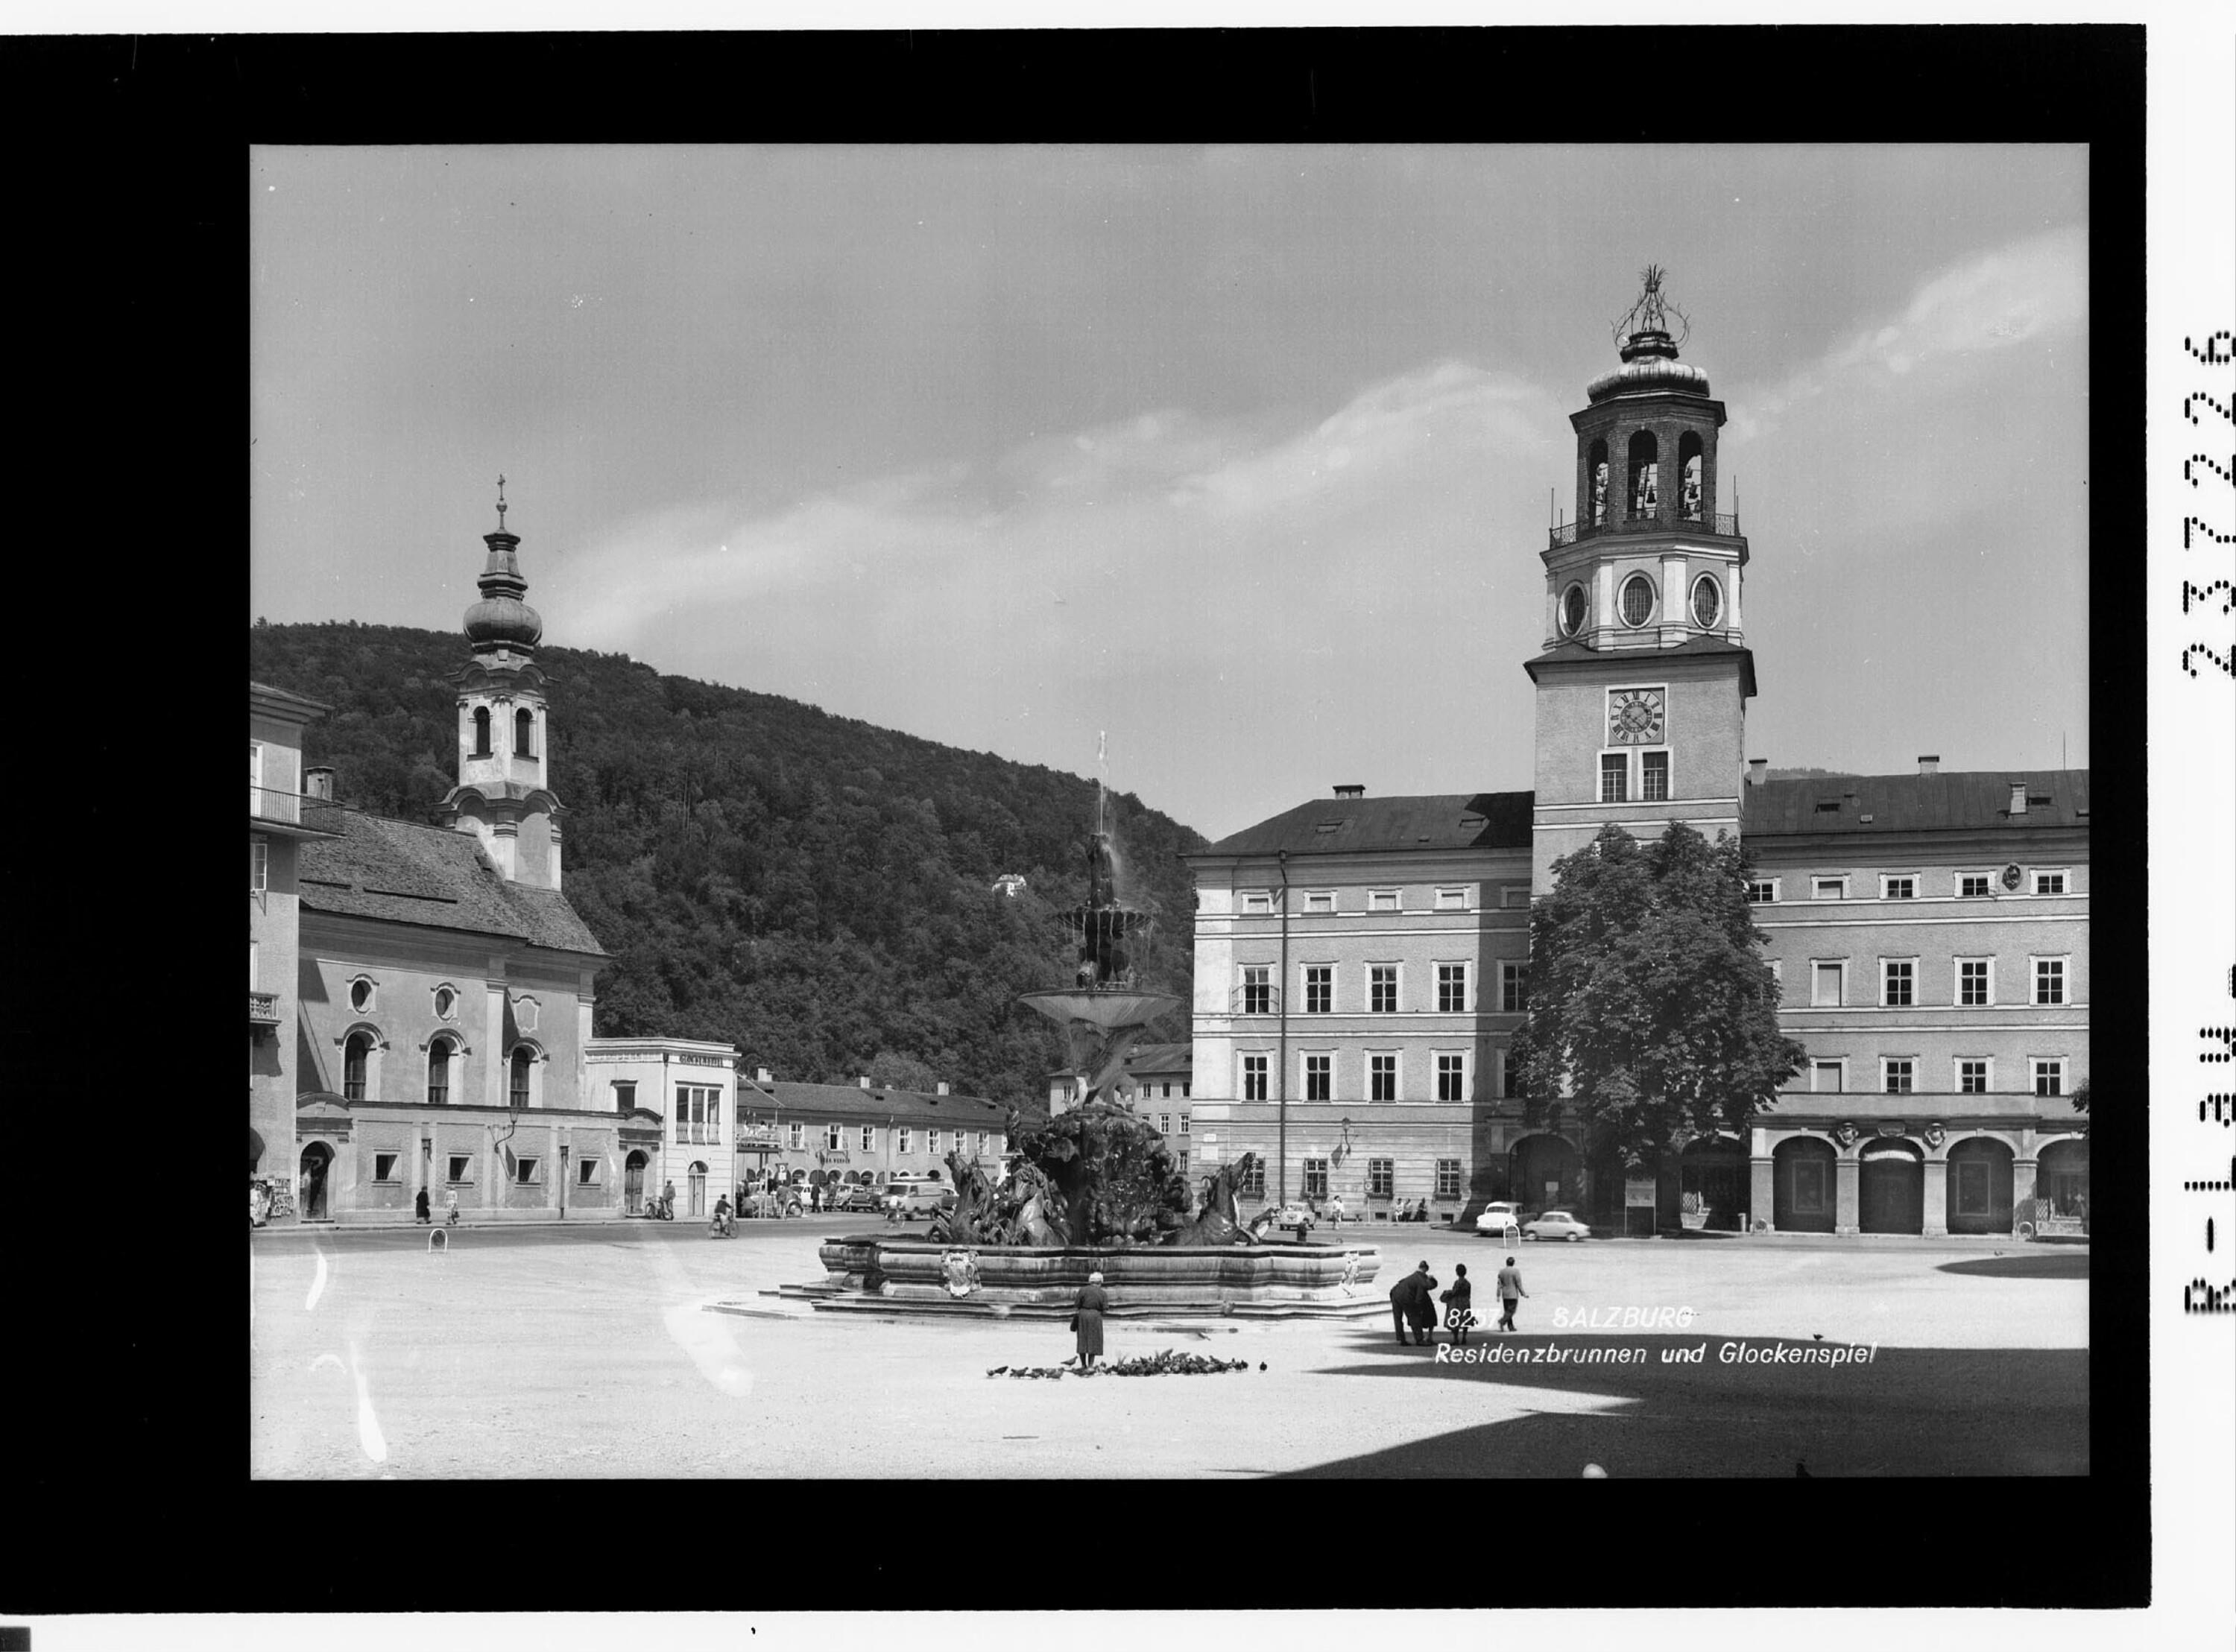 Salzburg / Residenzbrunnen und Glockenspiel></div>


    <hr>
    <div class=